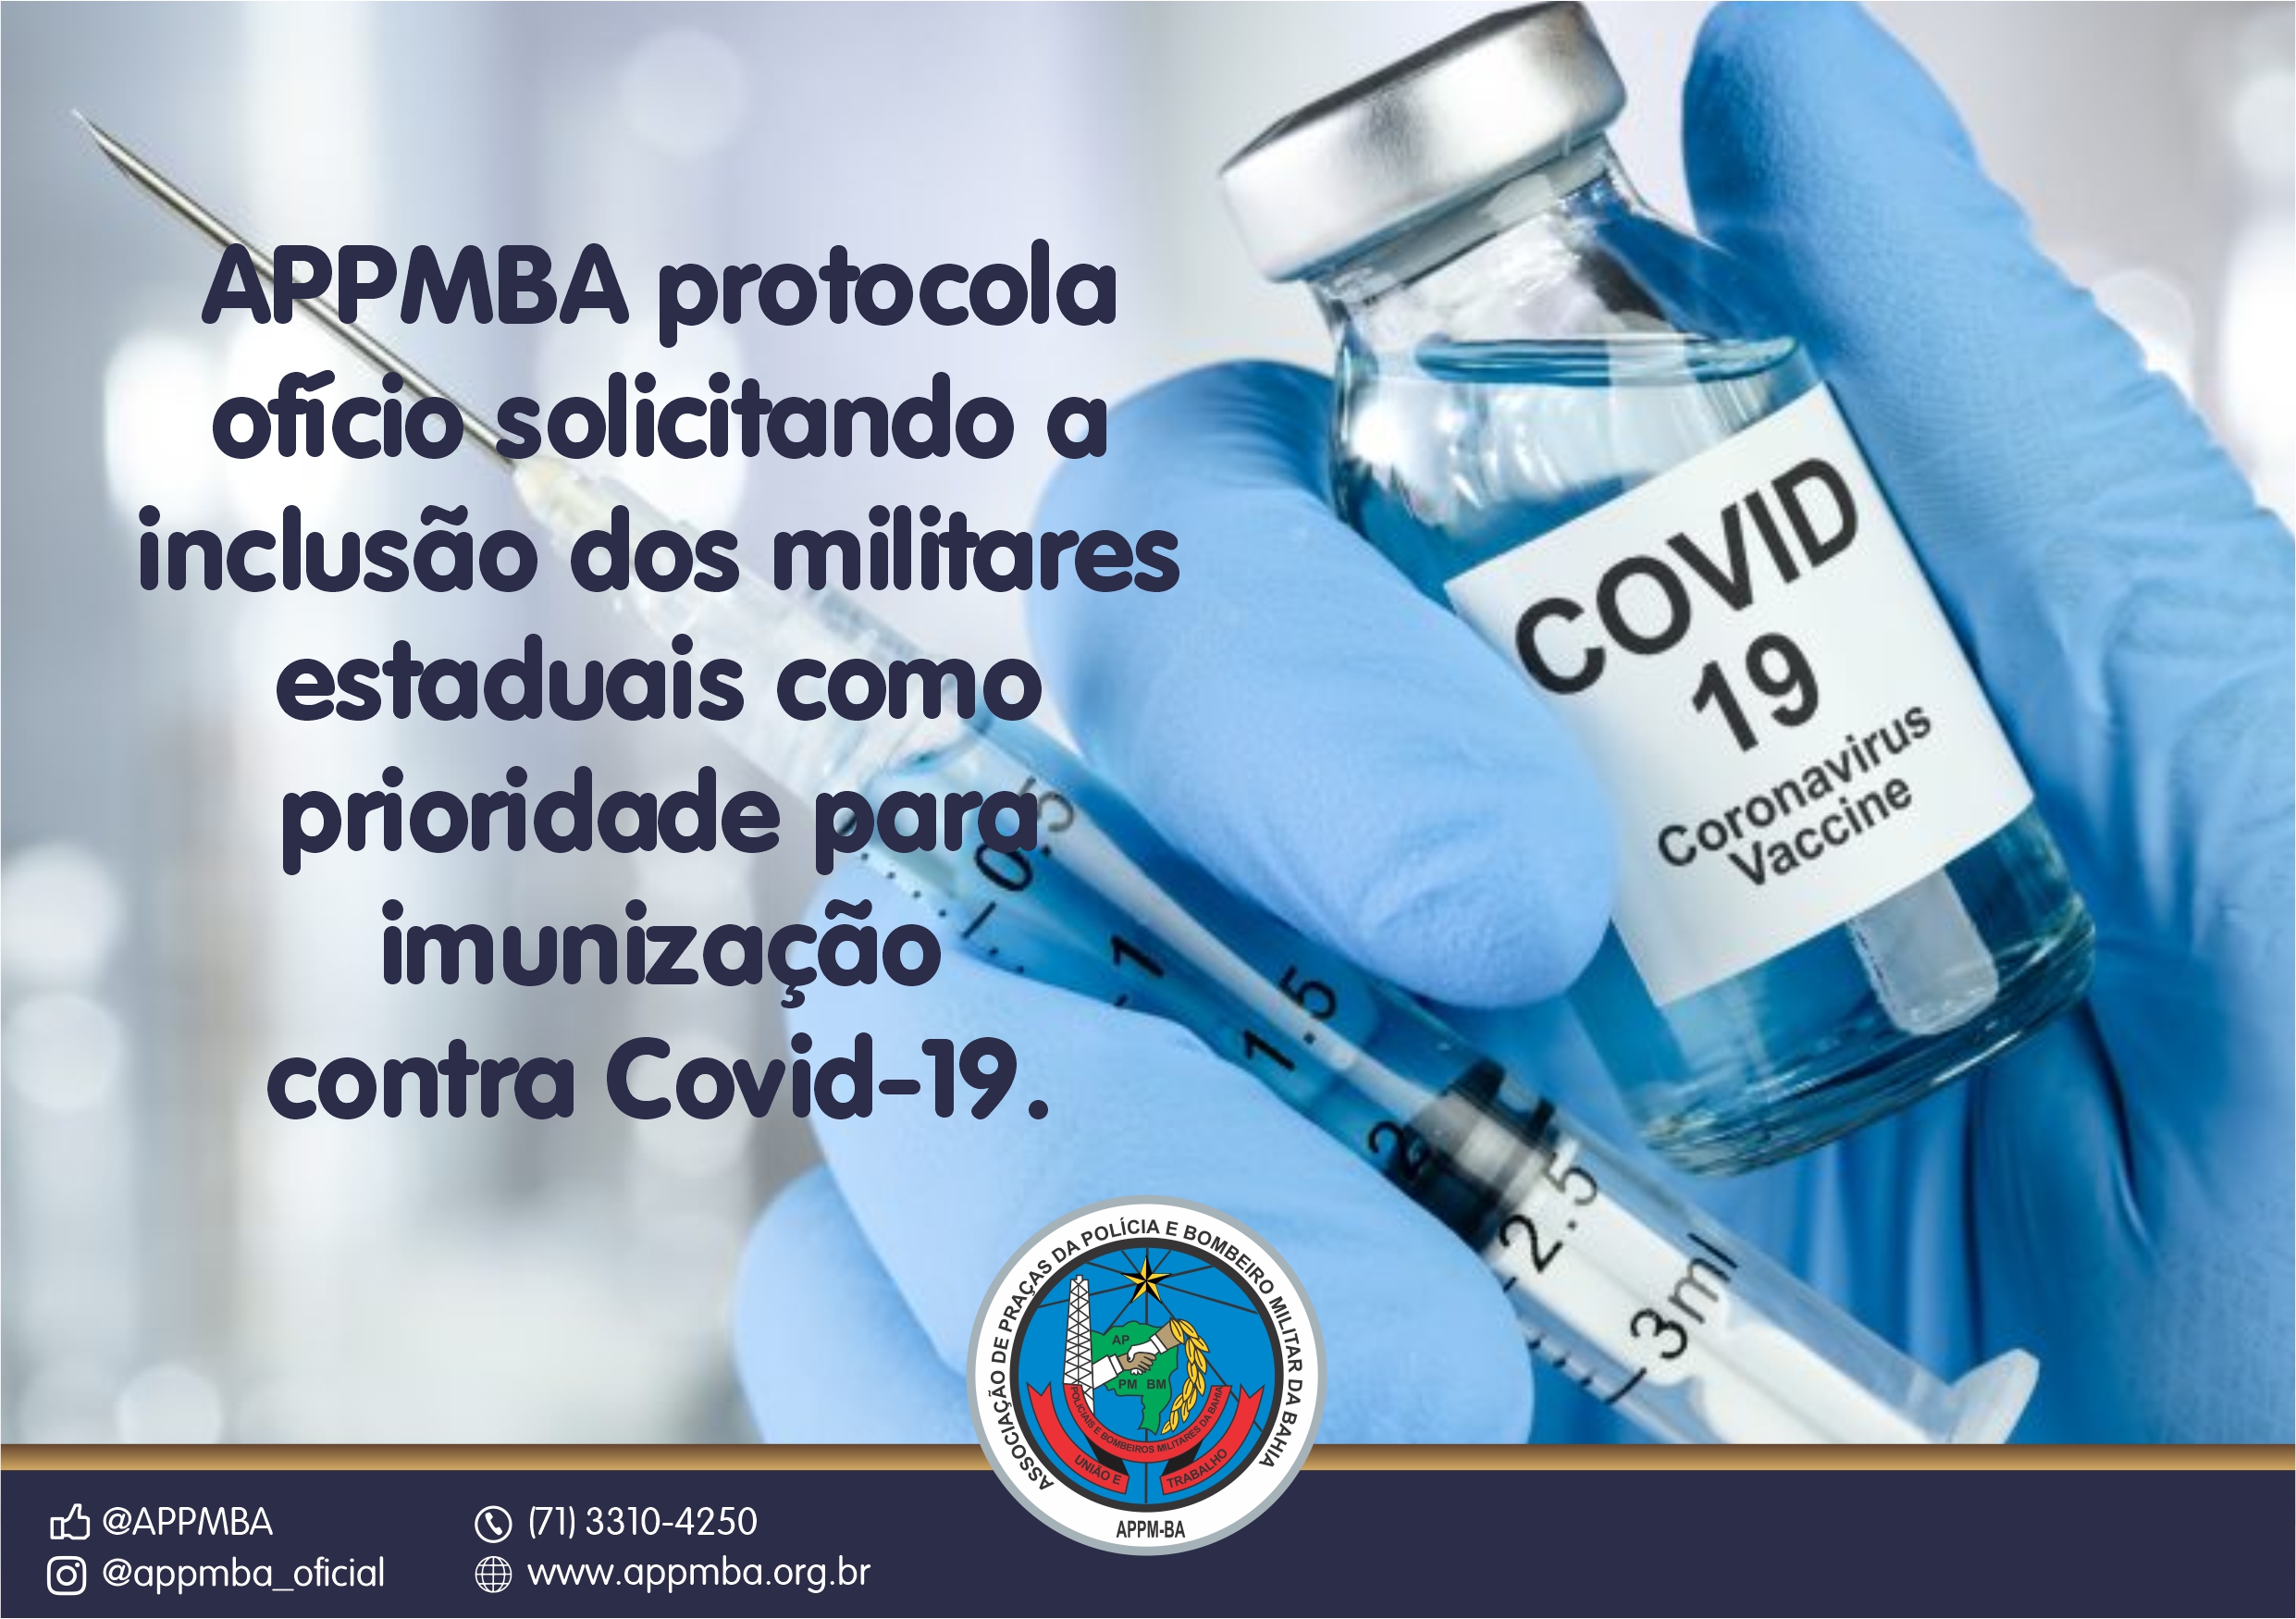 APPMBA protocola ofício solicitando a inclusão dos militares estaduais como prioridade para imunização contra Covid-19